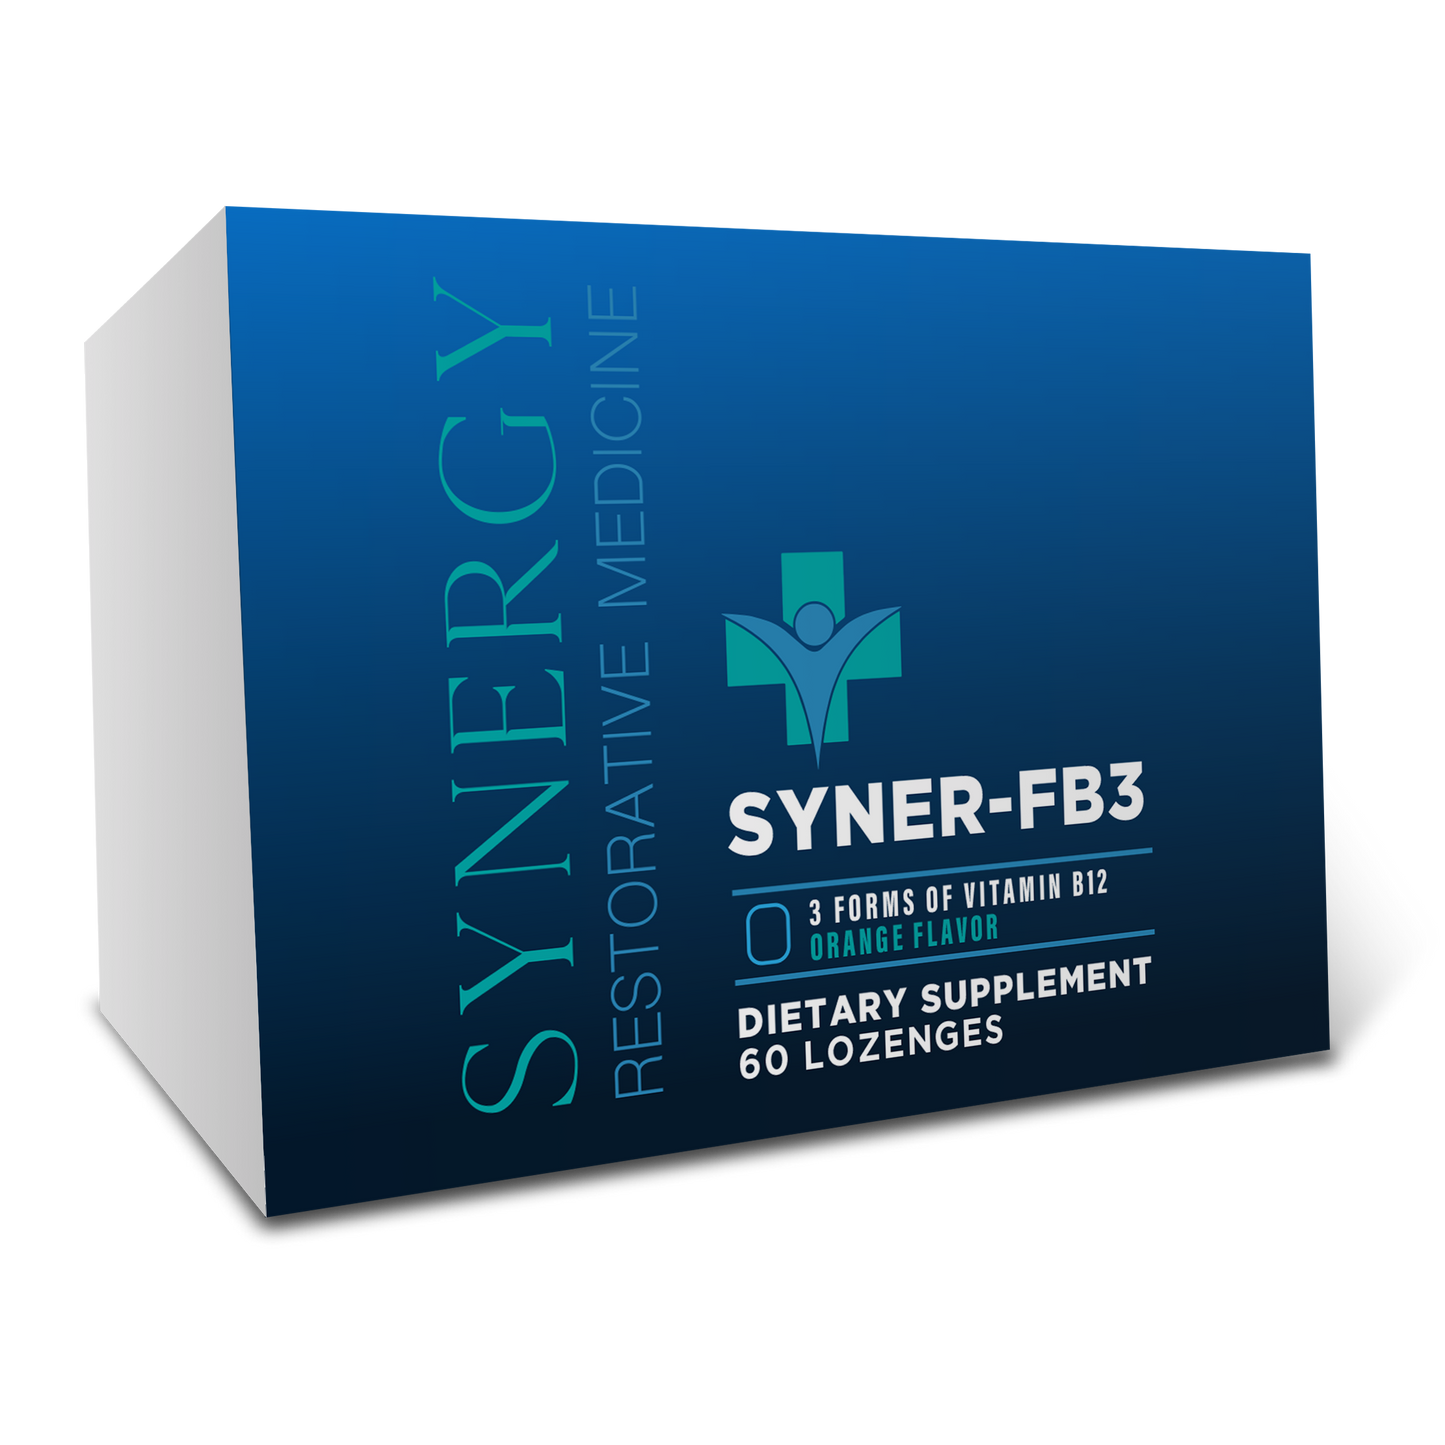 Syner-FB3